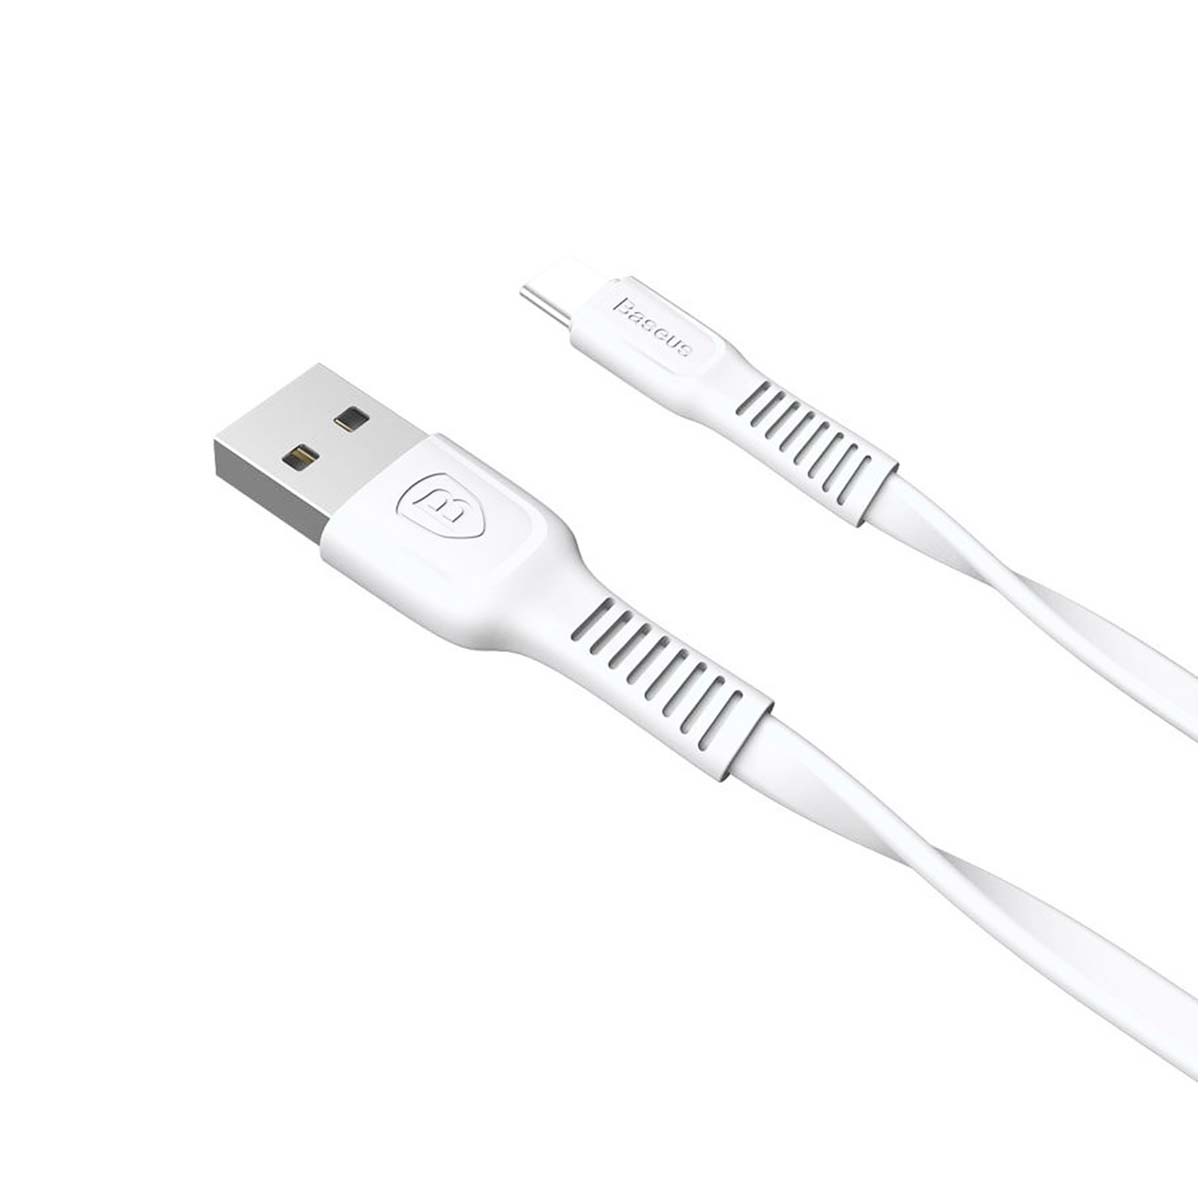 Кабель BASEUS Tough Series USB Type C, 2A, длина 1 метр, цвет белый